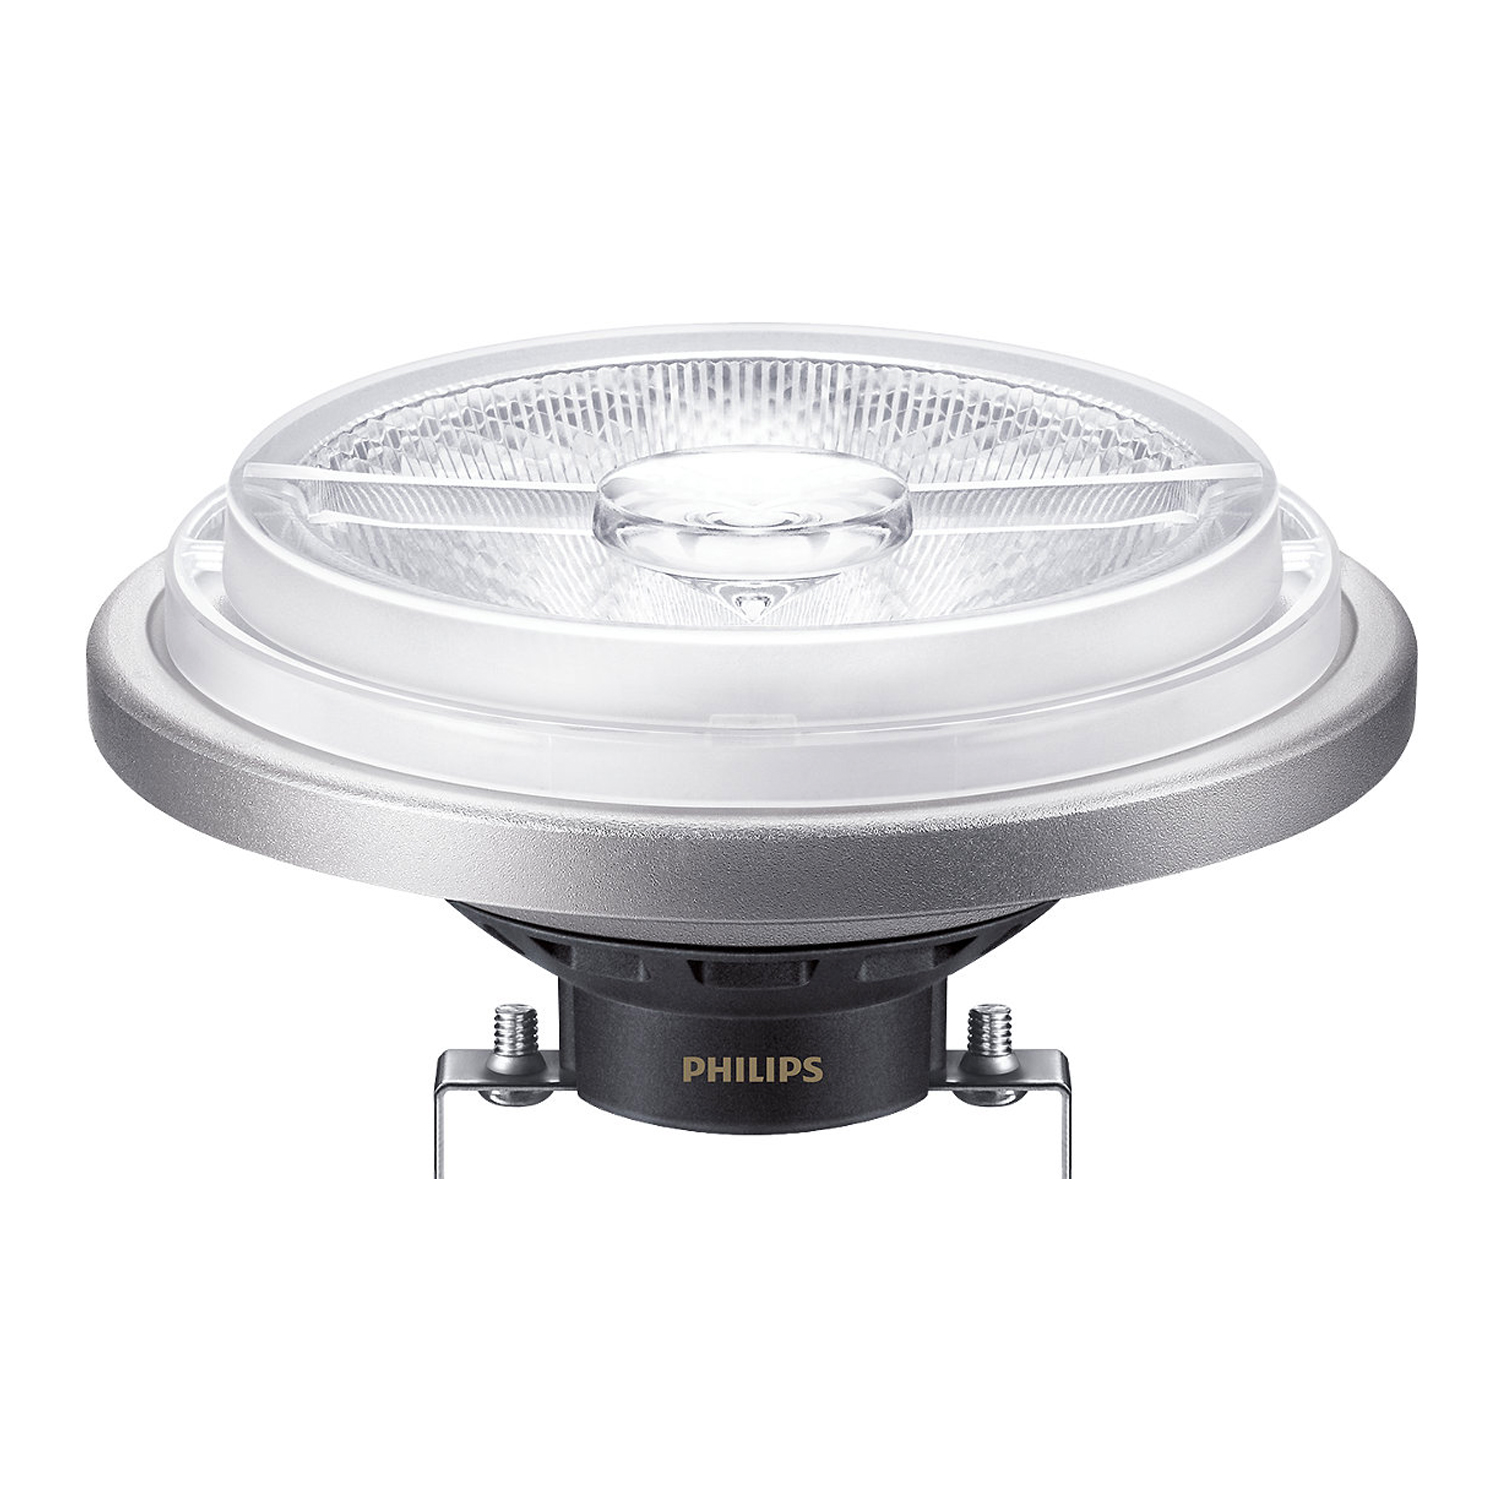 Philips LEDspot ExpertColor G53 AR111 (MASTER) 15W 927 24D | Dimbaar - Hoogste Kleurweergave - Vervanger voor 75W